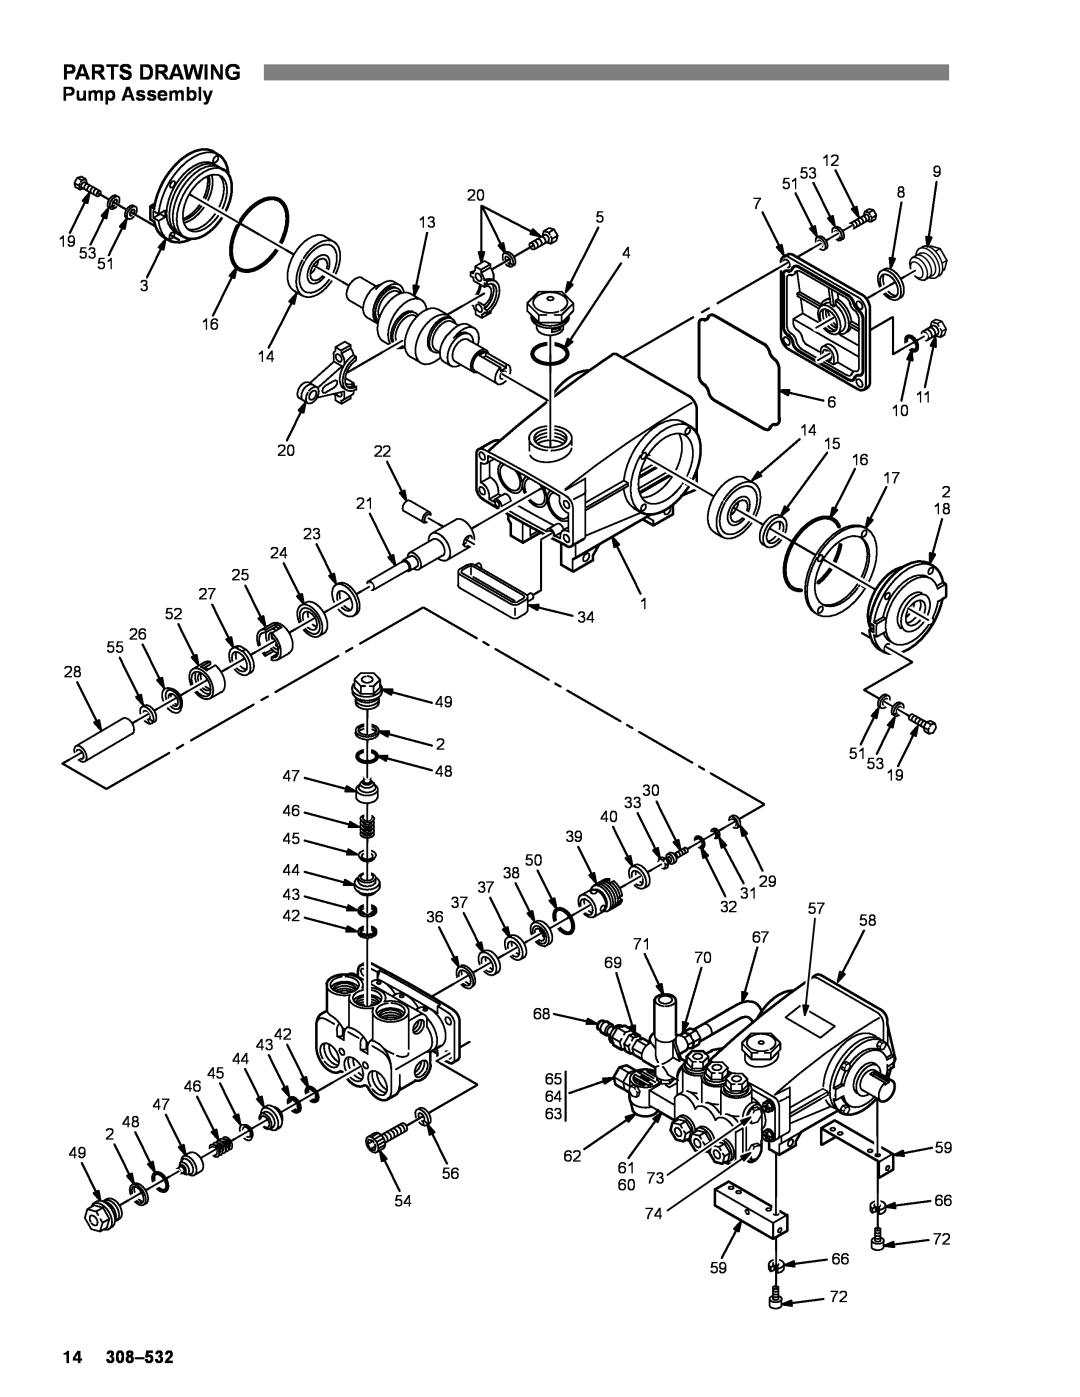 Graco Inc 308-532, 800-707, 800-706 manual Pump Assembly, Parts Drawing 